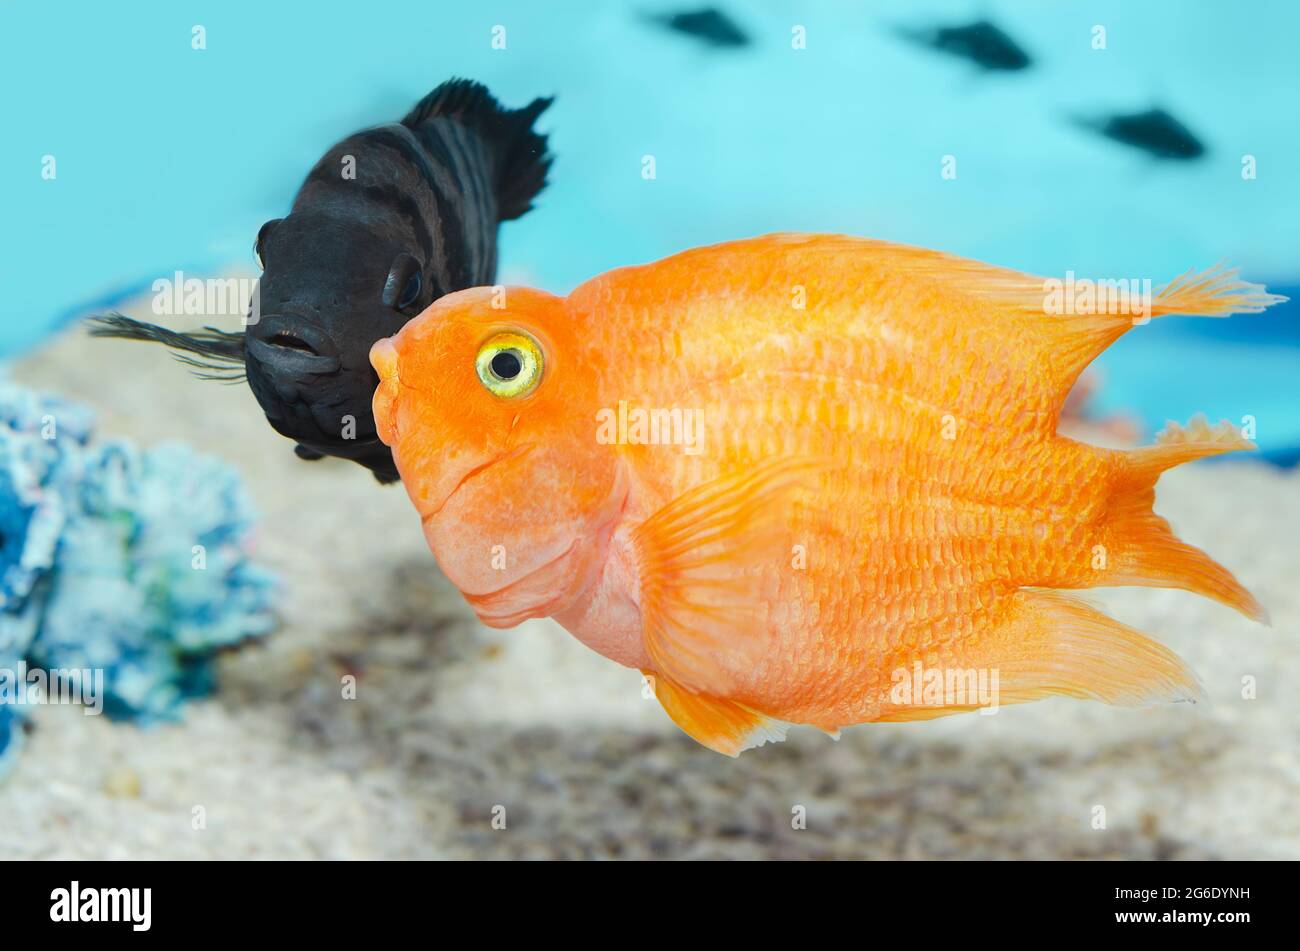 Big beautiful fish in the aquarium. Fish with black stripes Cichlasoma nigrofasciatum and red parrot. Selective focus Stock Photo